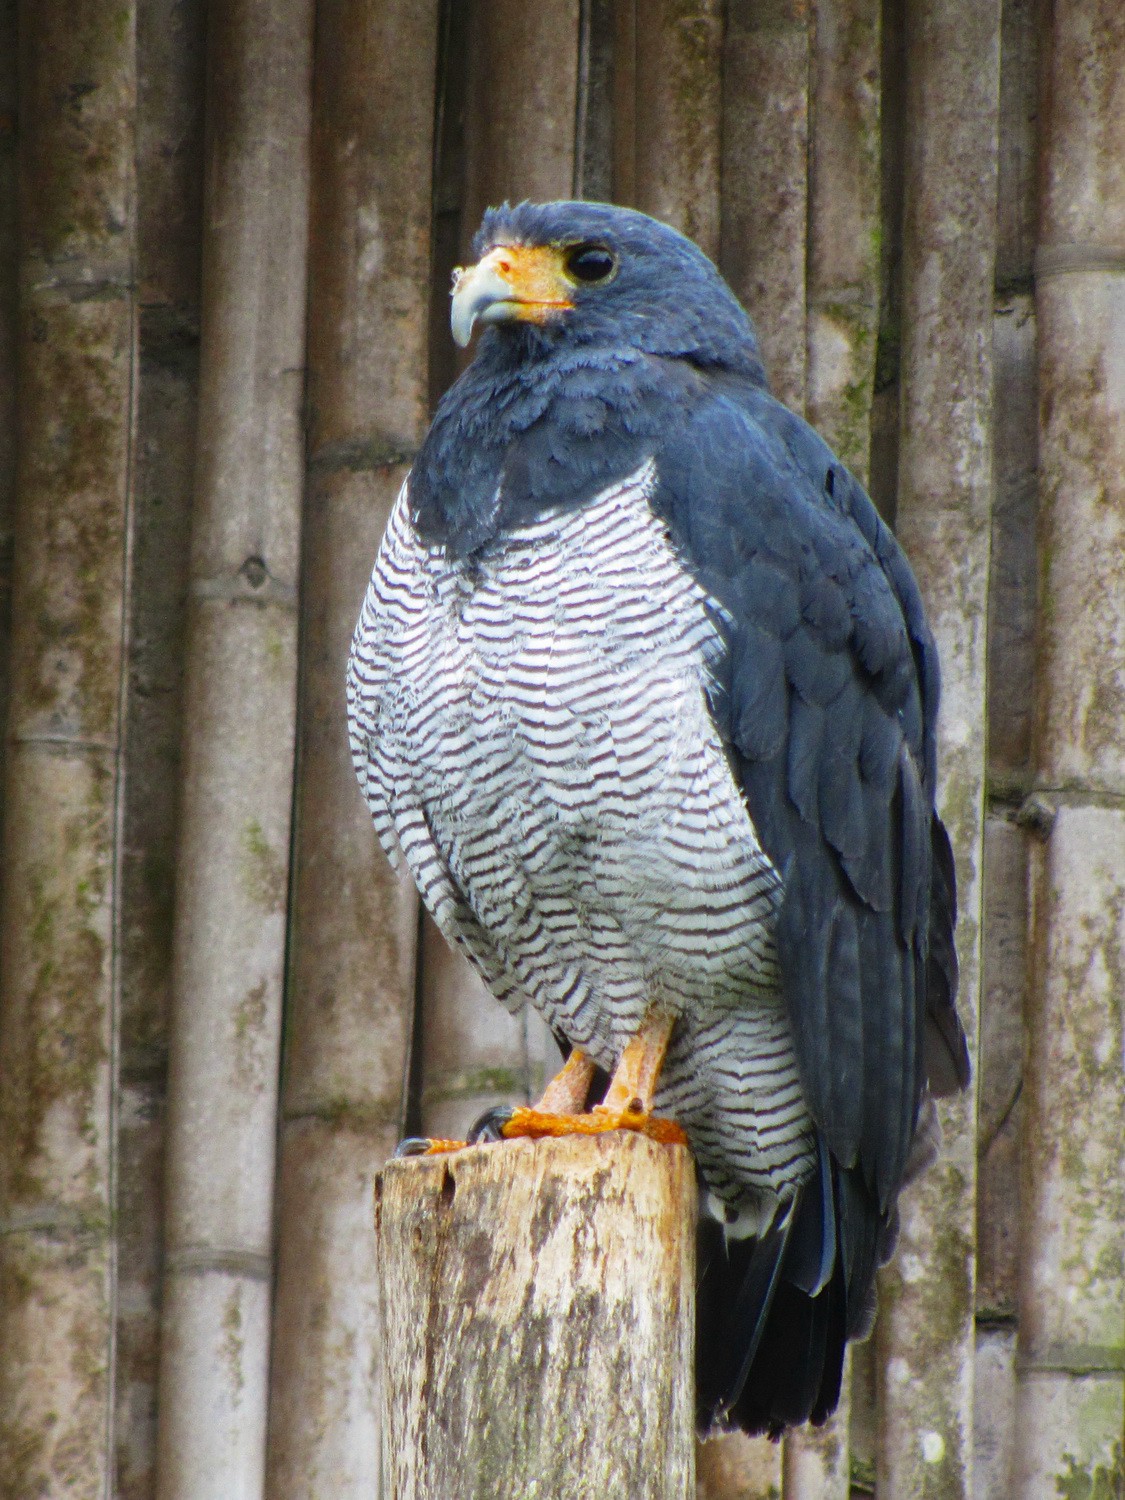 Barred Hawk in the Parque el Condor close to Otavalo